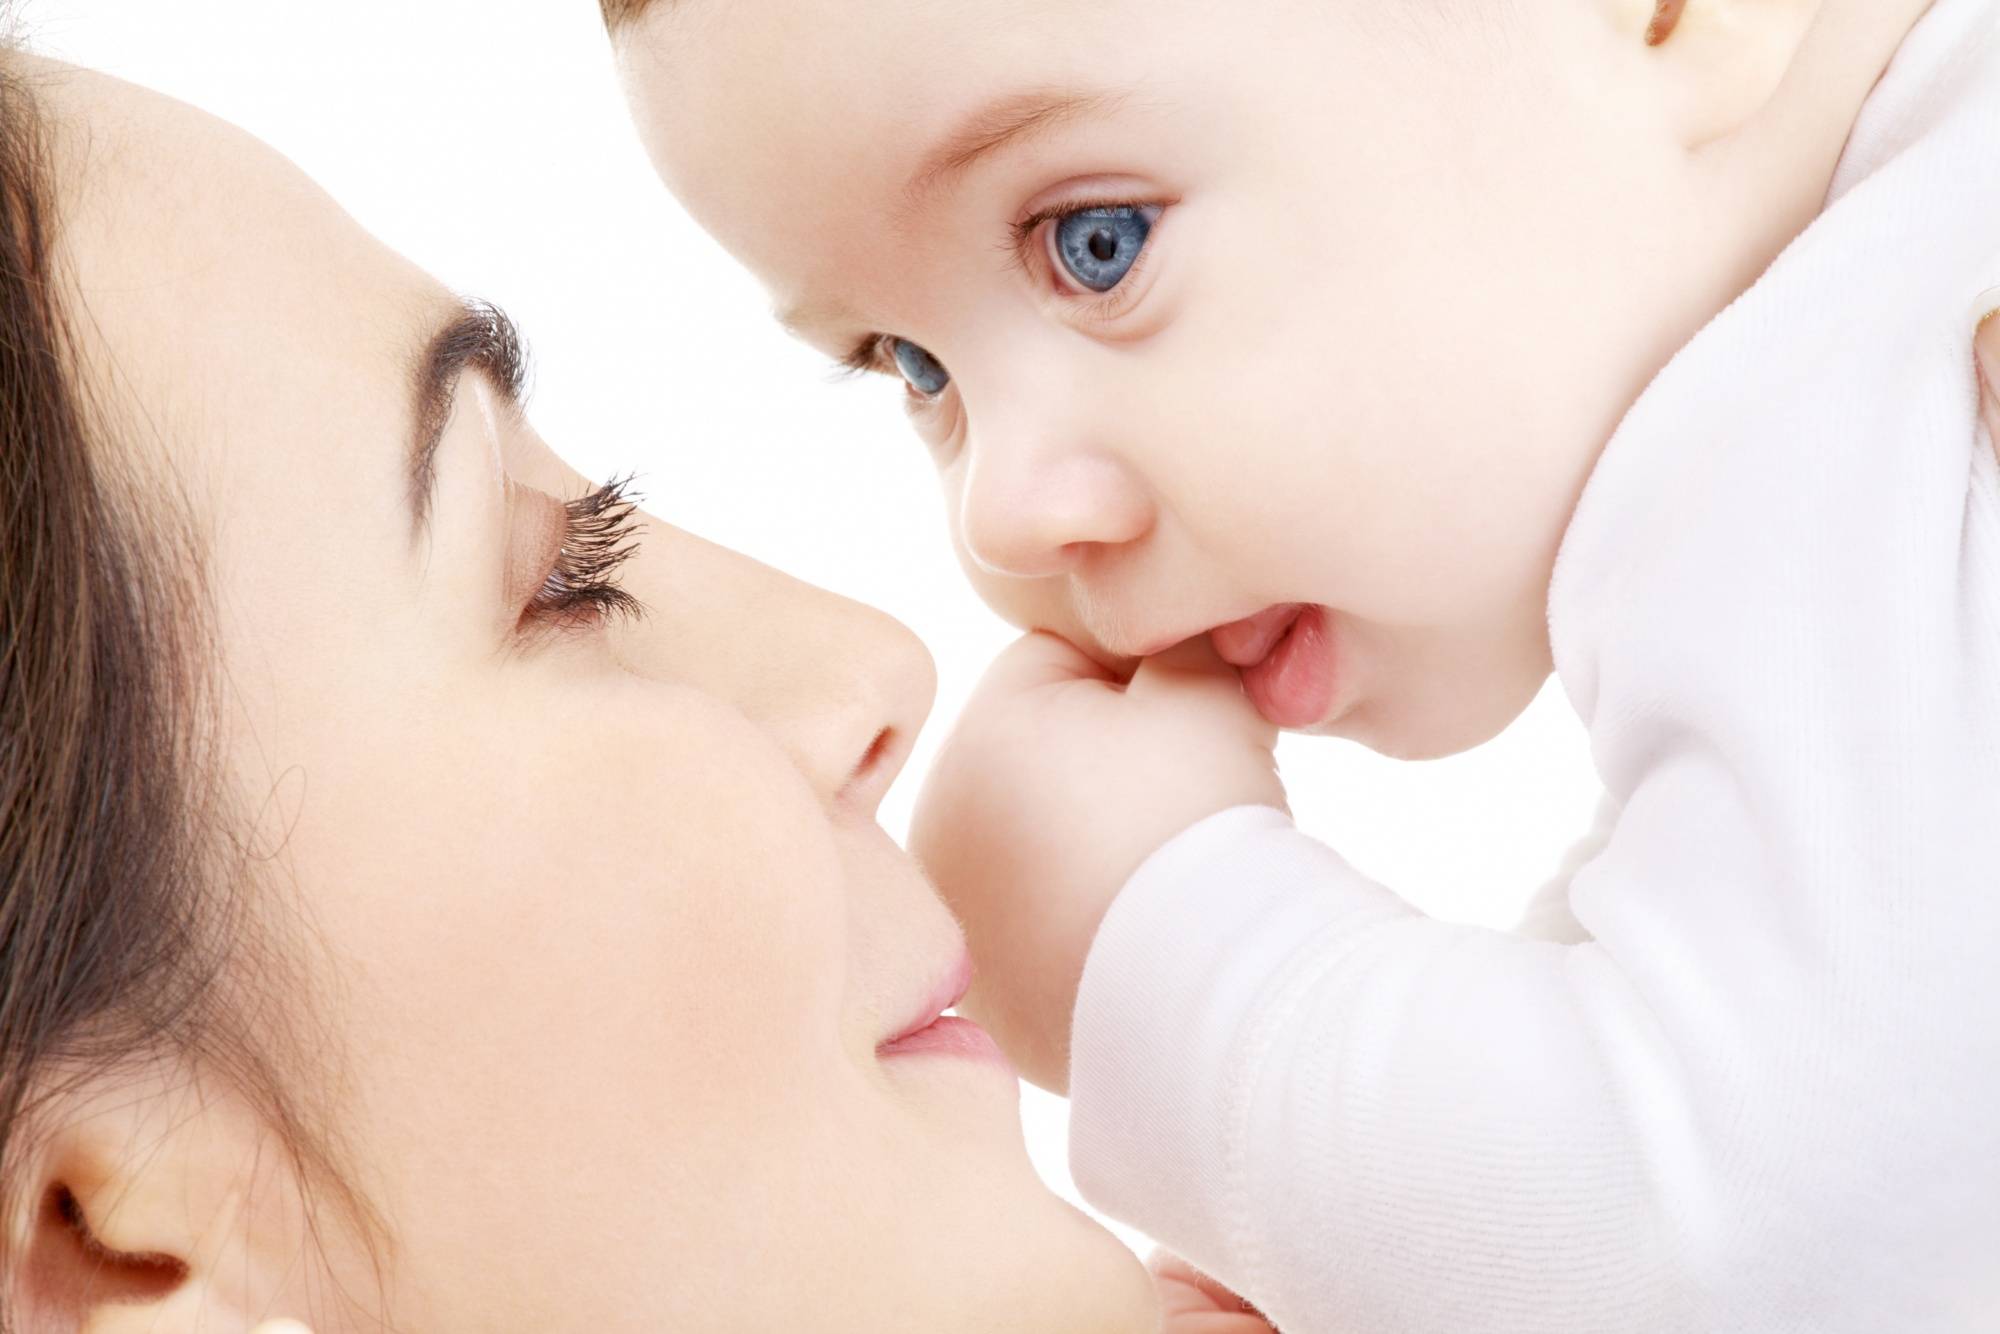 تاثیر شیر مادر در قوی و باهوش شدن کودک